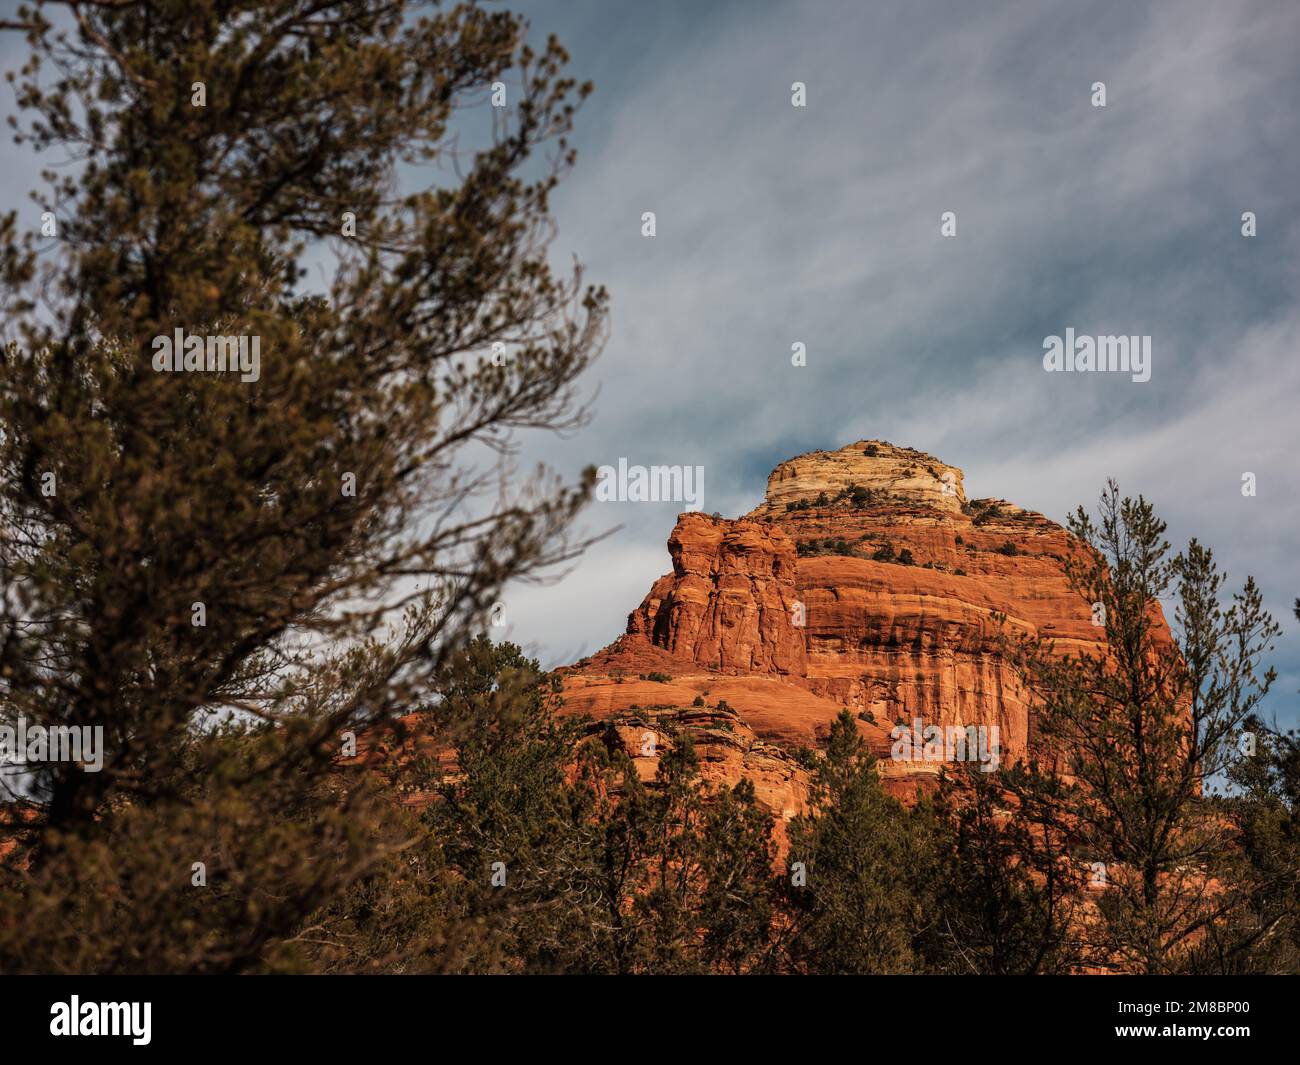 Formazioni rocciose a Sedona, Arizona. La zona è popolare tra gli escursionisti e coloro che cercano un collegamento spirituale che la zona si crede abbia. Foto Stock